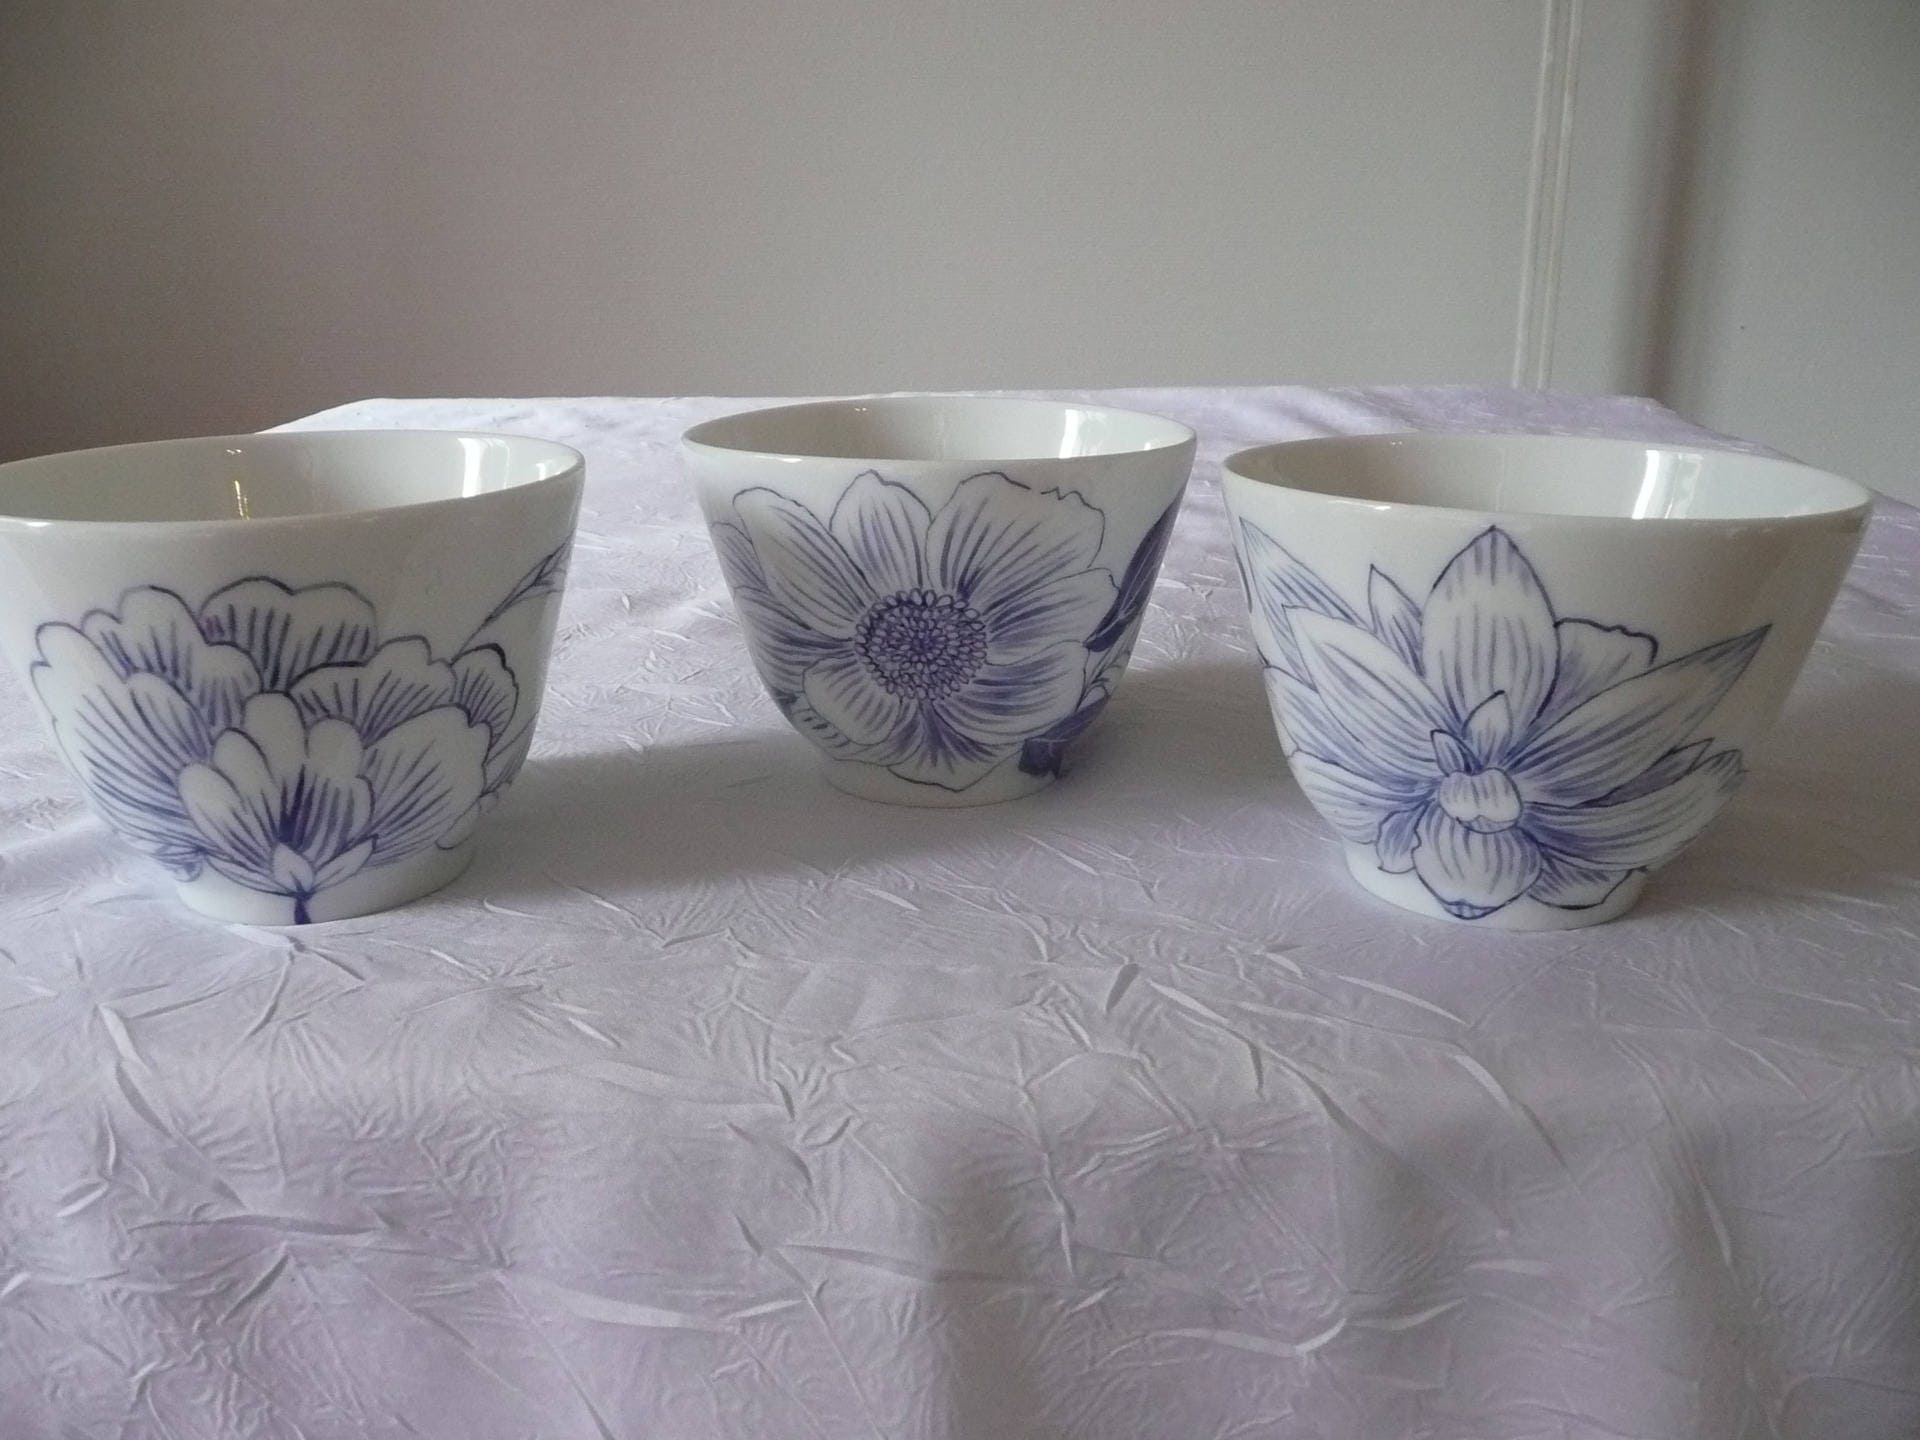 6 Bols à Soupe Orientale en Porcelaine Fine Peinte Main Motif de Fleurs Stylisées Bleu Ming